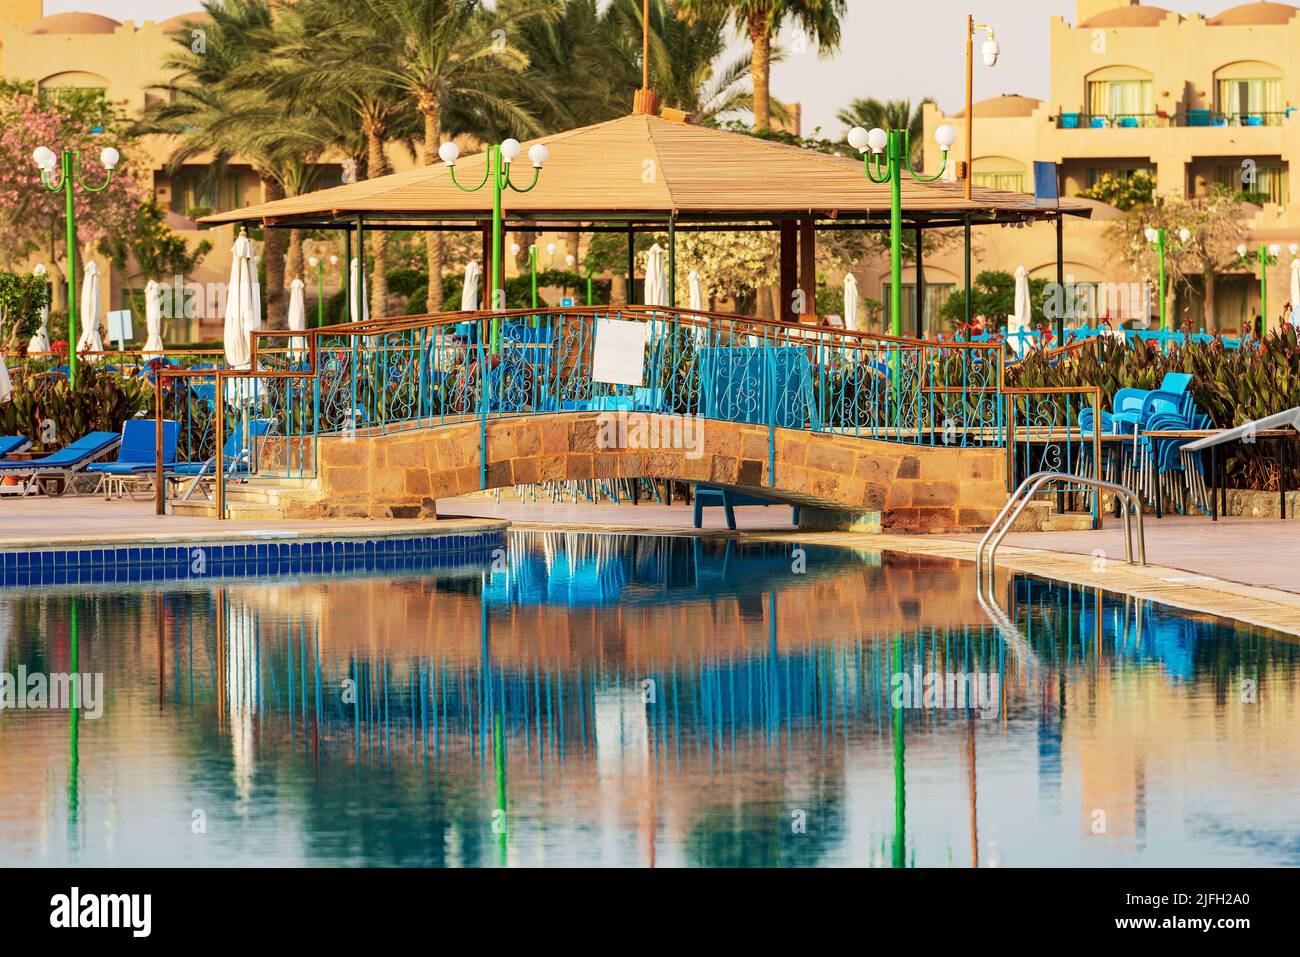 Leeres Schwimmbad in einem touristischen Dorf in Ägypten, Ferienort an der Küste des Roten Meeres, Sahara Wüste, Marsa Alam, Afrika. Stockfoto